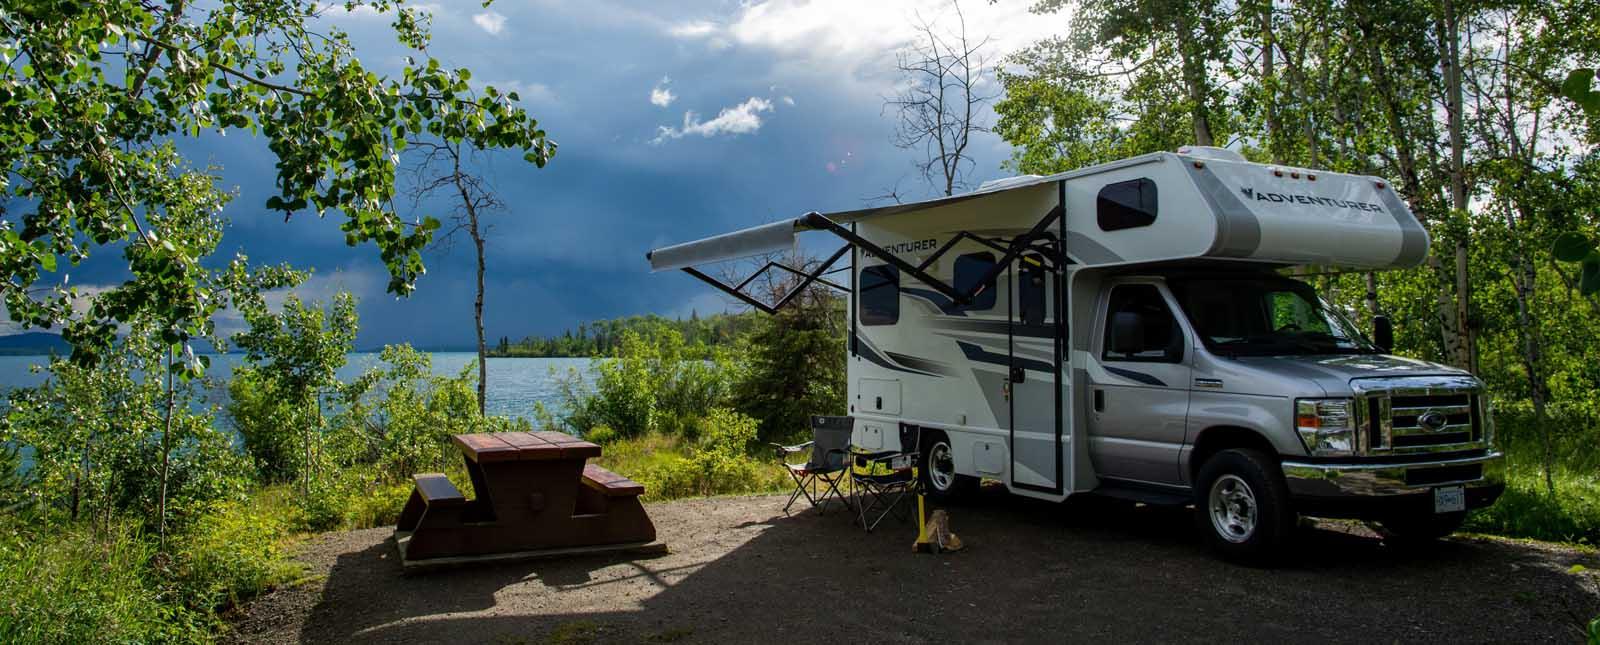 kamperen met camper aan meer canada